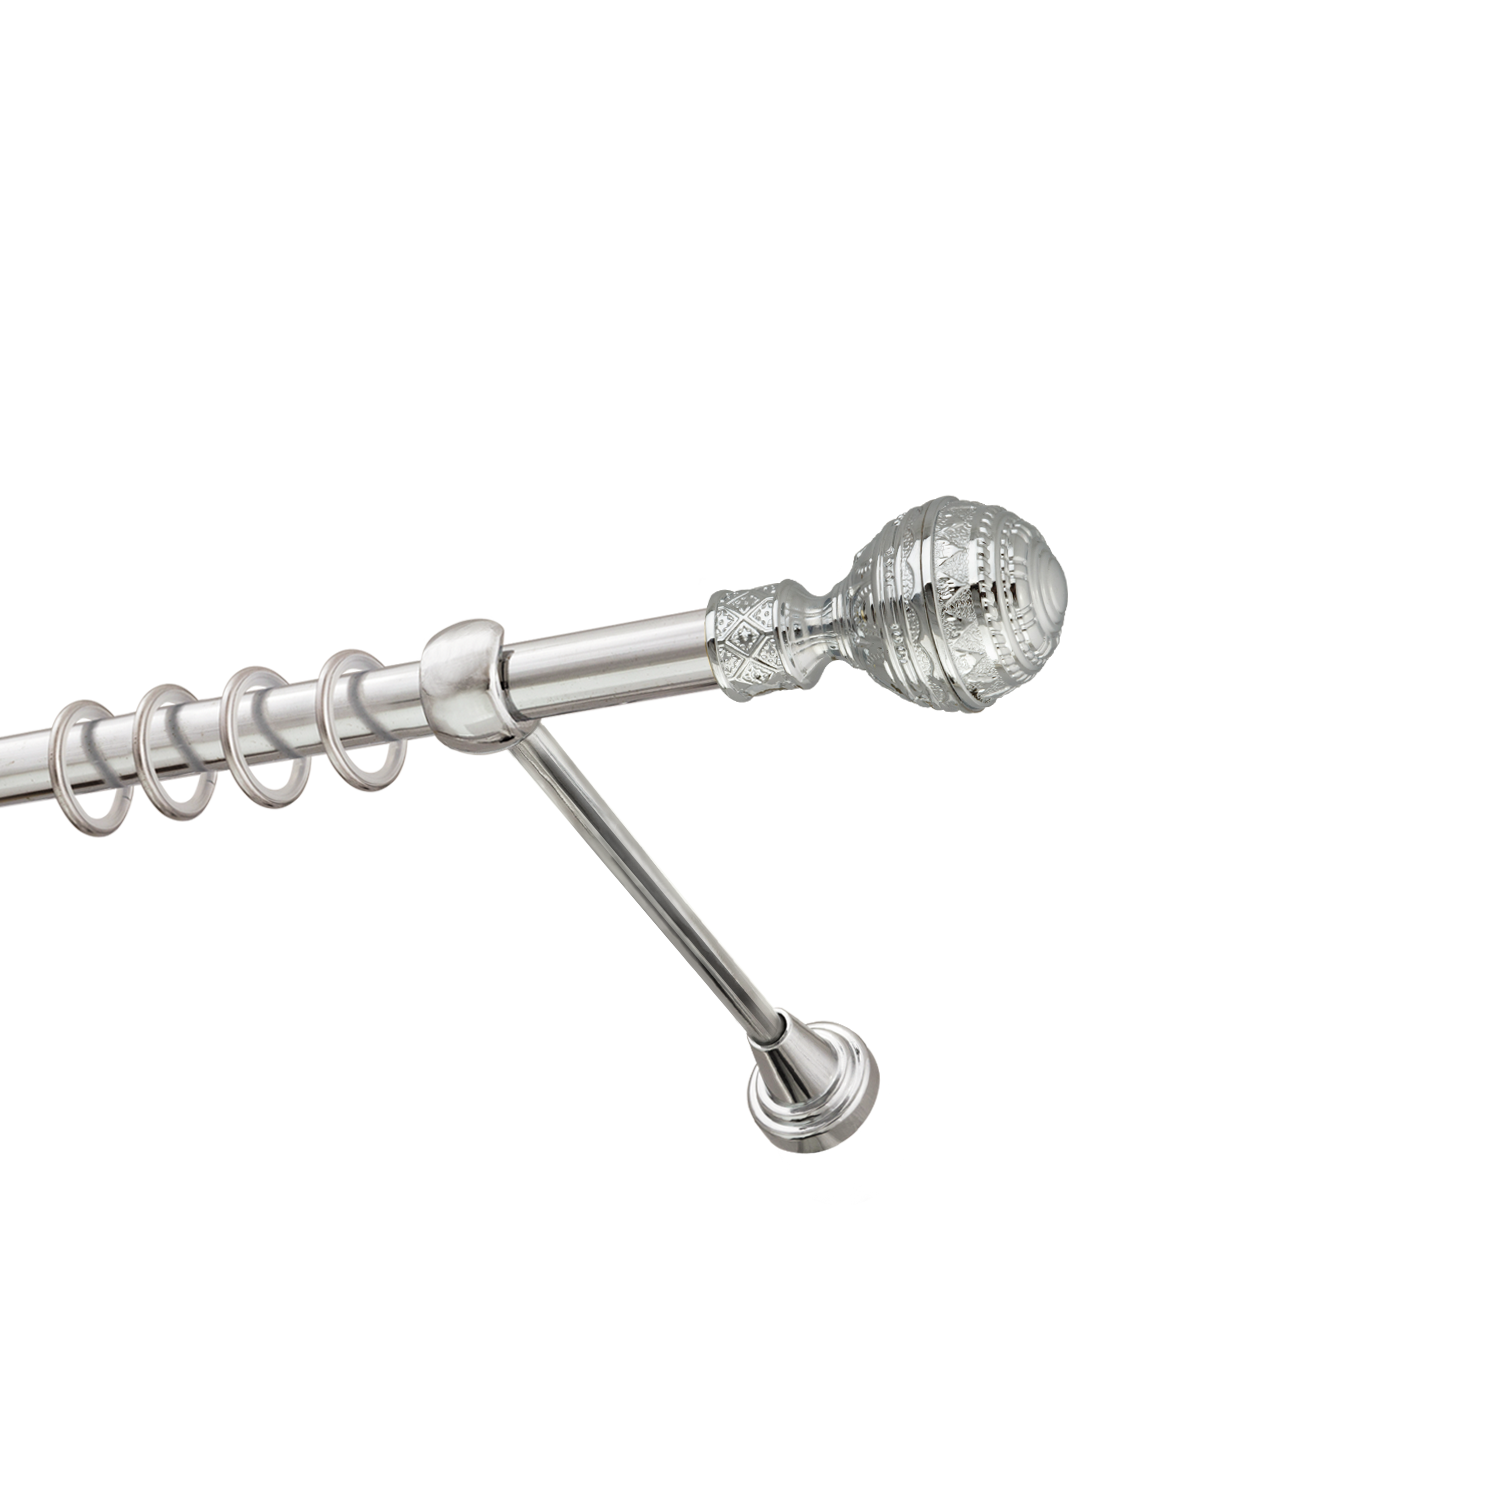 Металлический карниз для штор Роял, однорядный 16 мм, серебро, гладкая штанга, длина 300 см - фото Wikidecor.ru